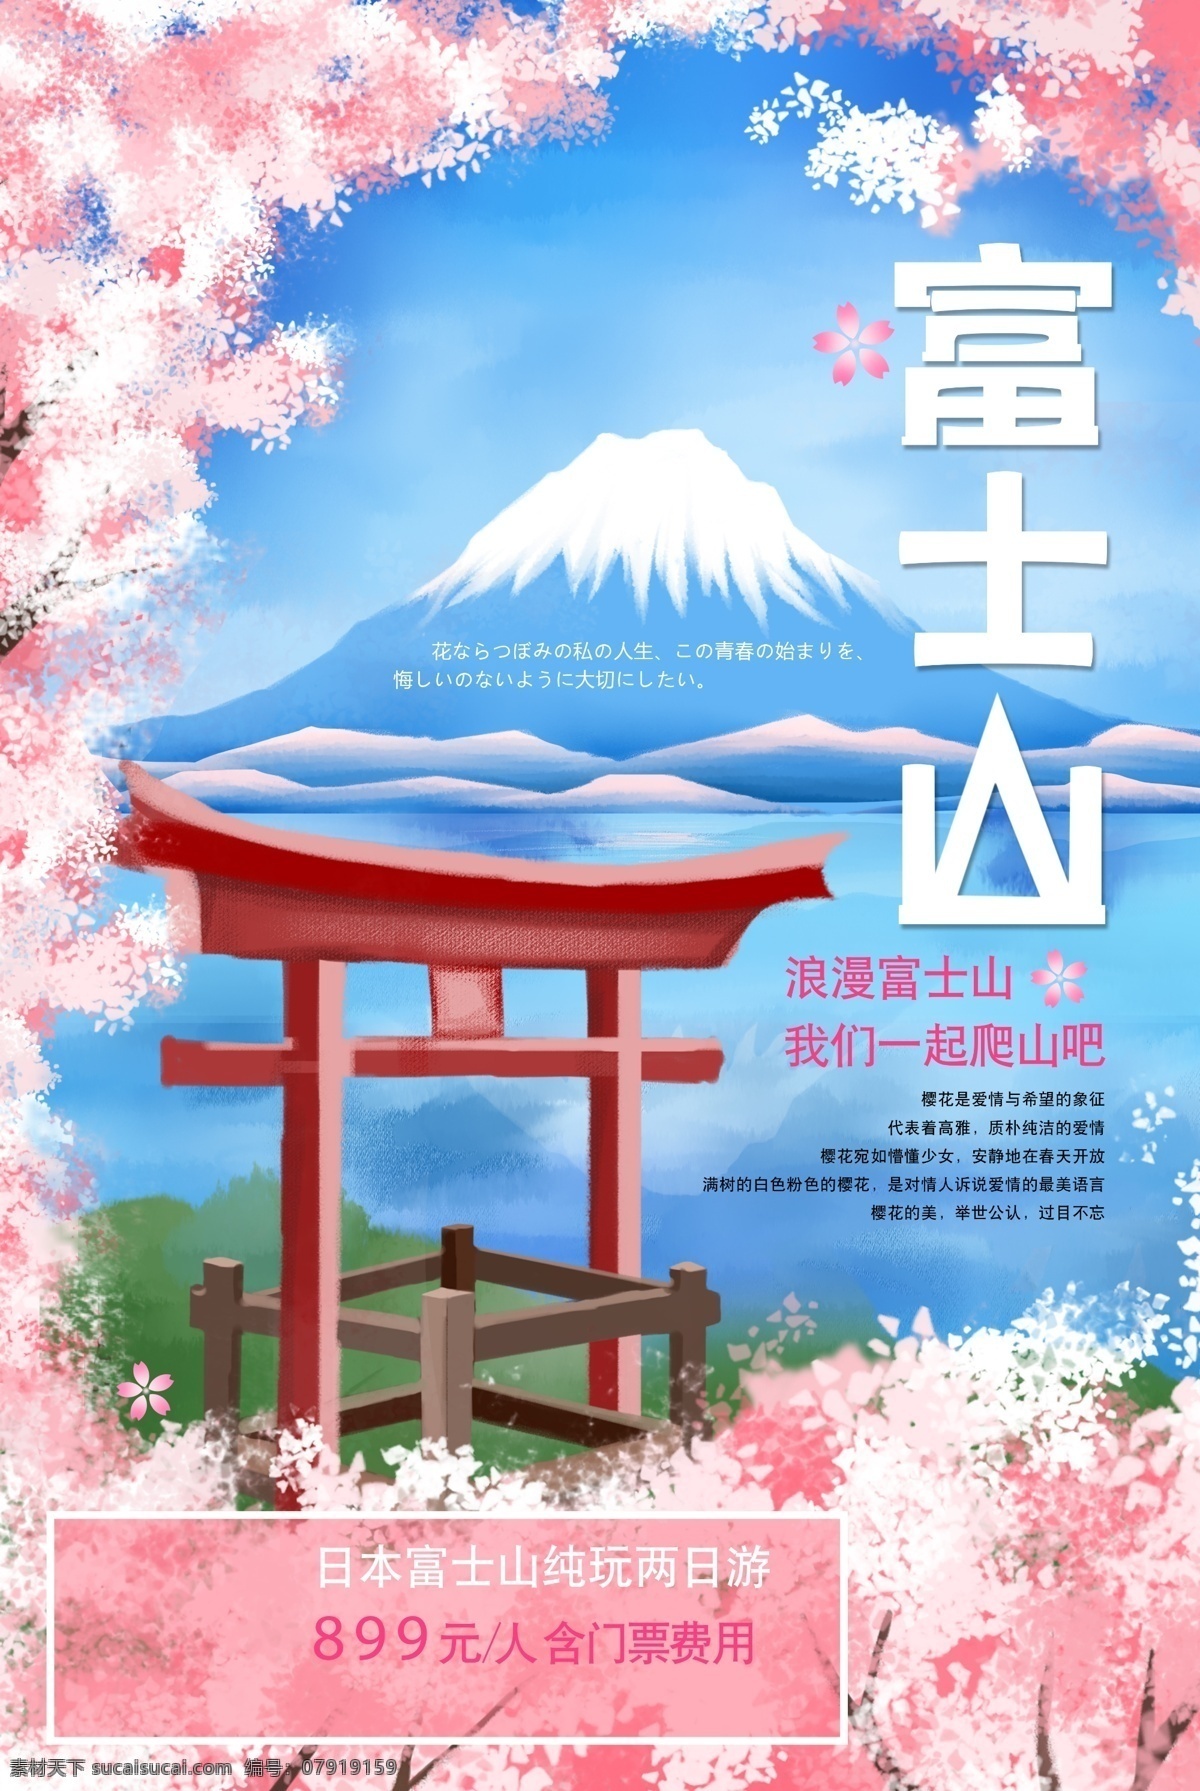 富士山 旅游 旅行 活动 宣传海报 素材图片 宣传 海报